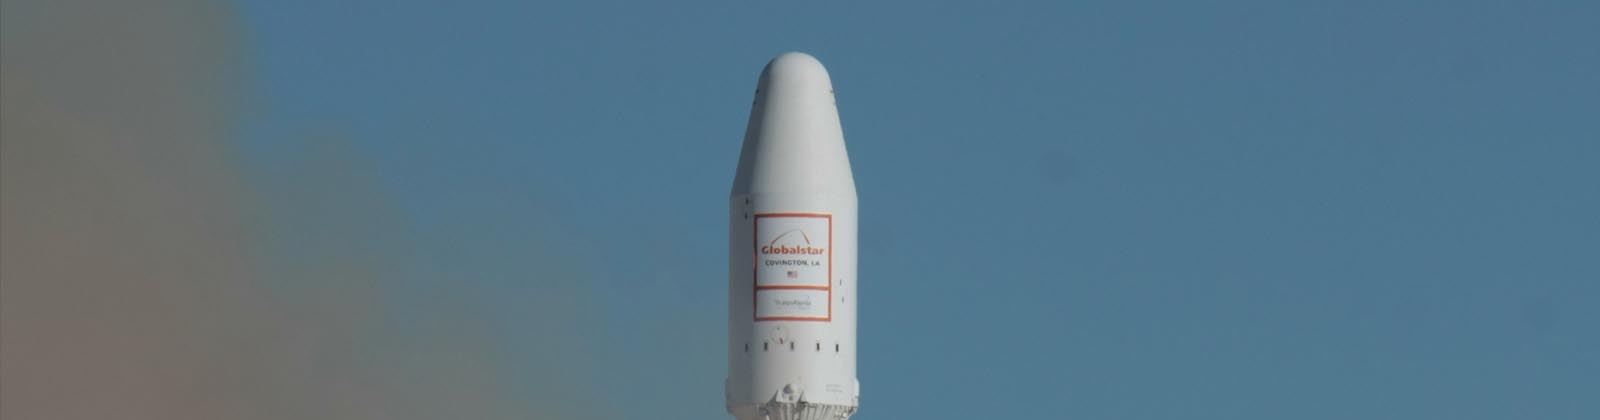 Décollage Soyuz - Globalstar